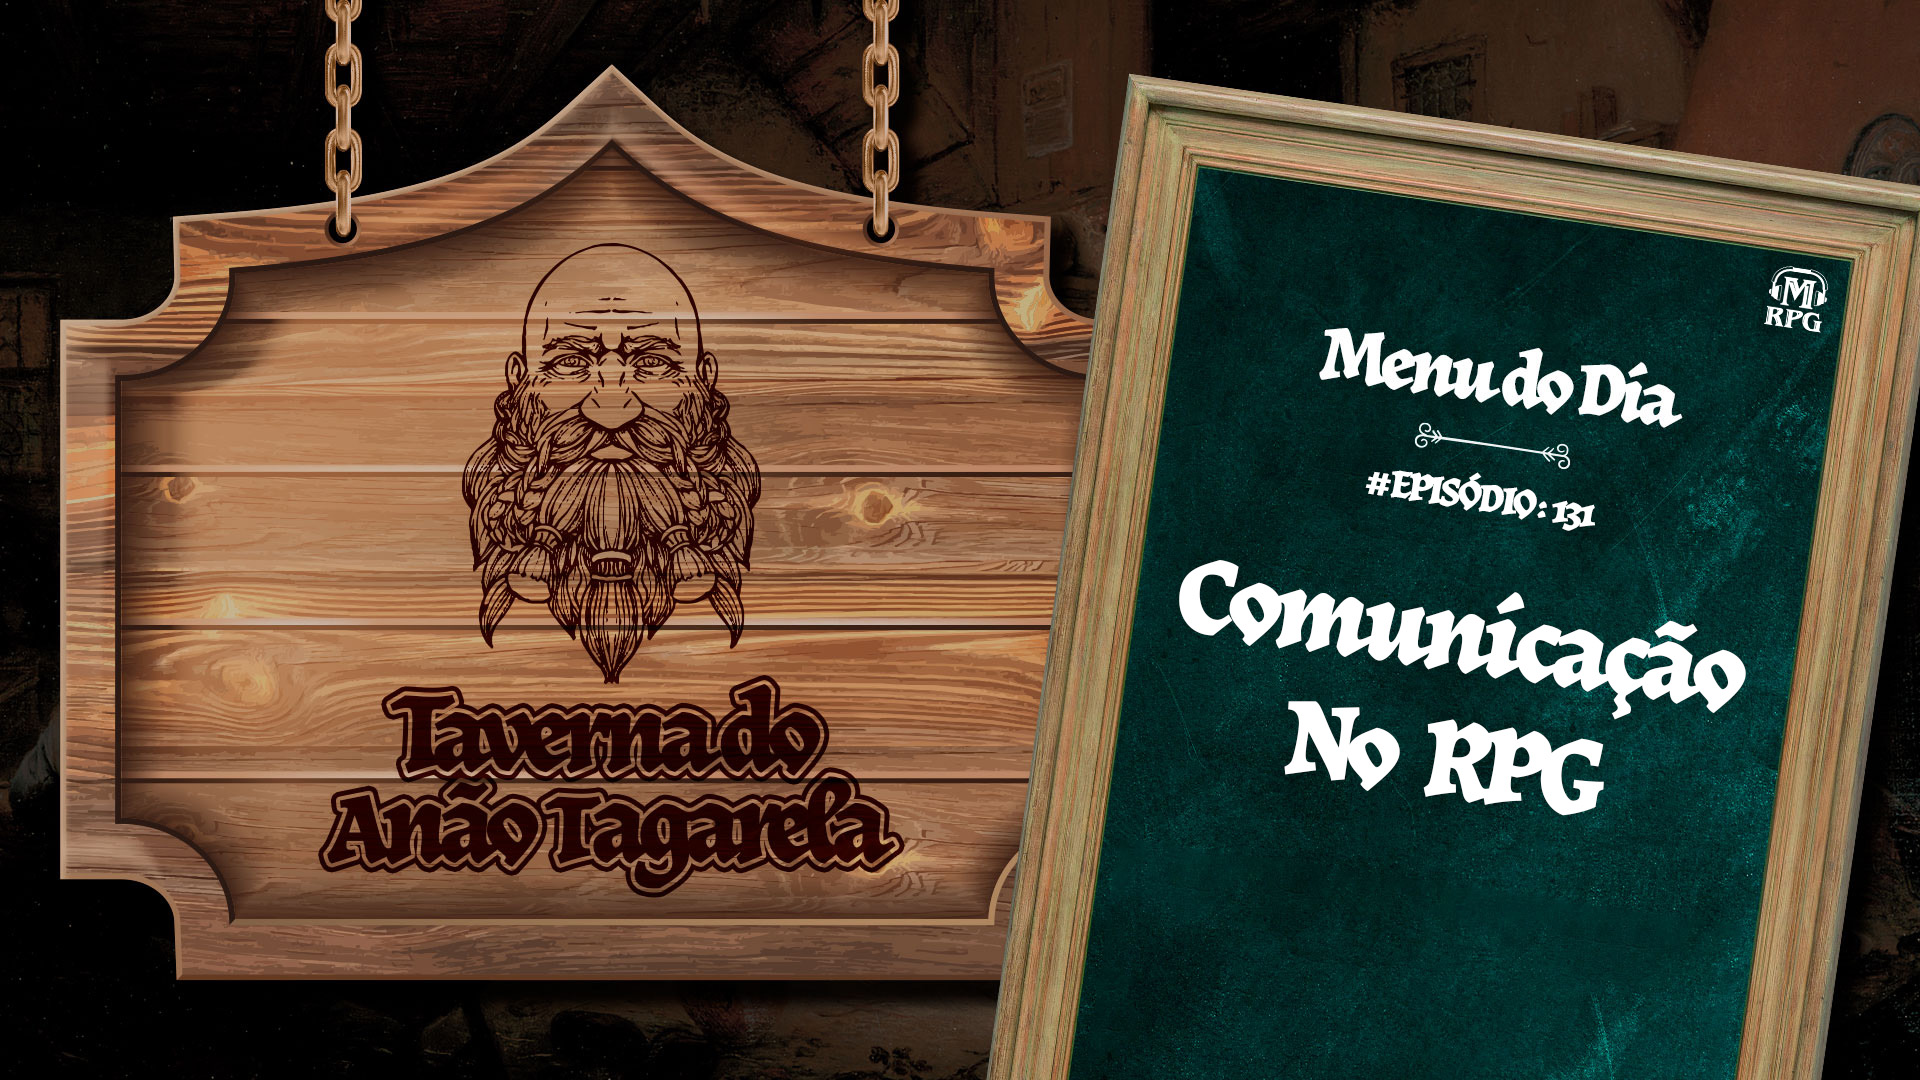 Comunicação no RPG – Taverna do Anão Tagarela #131